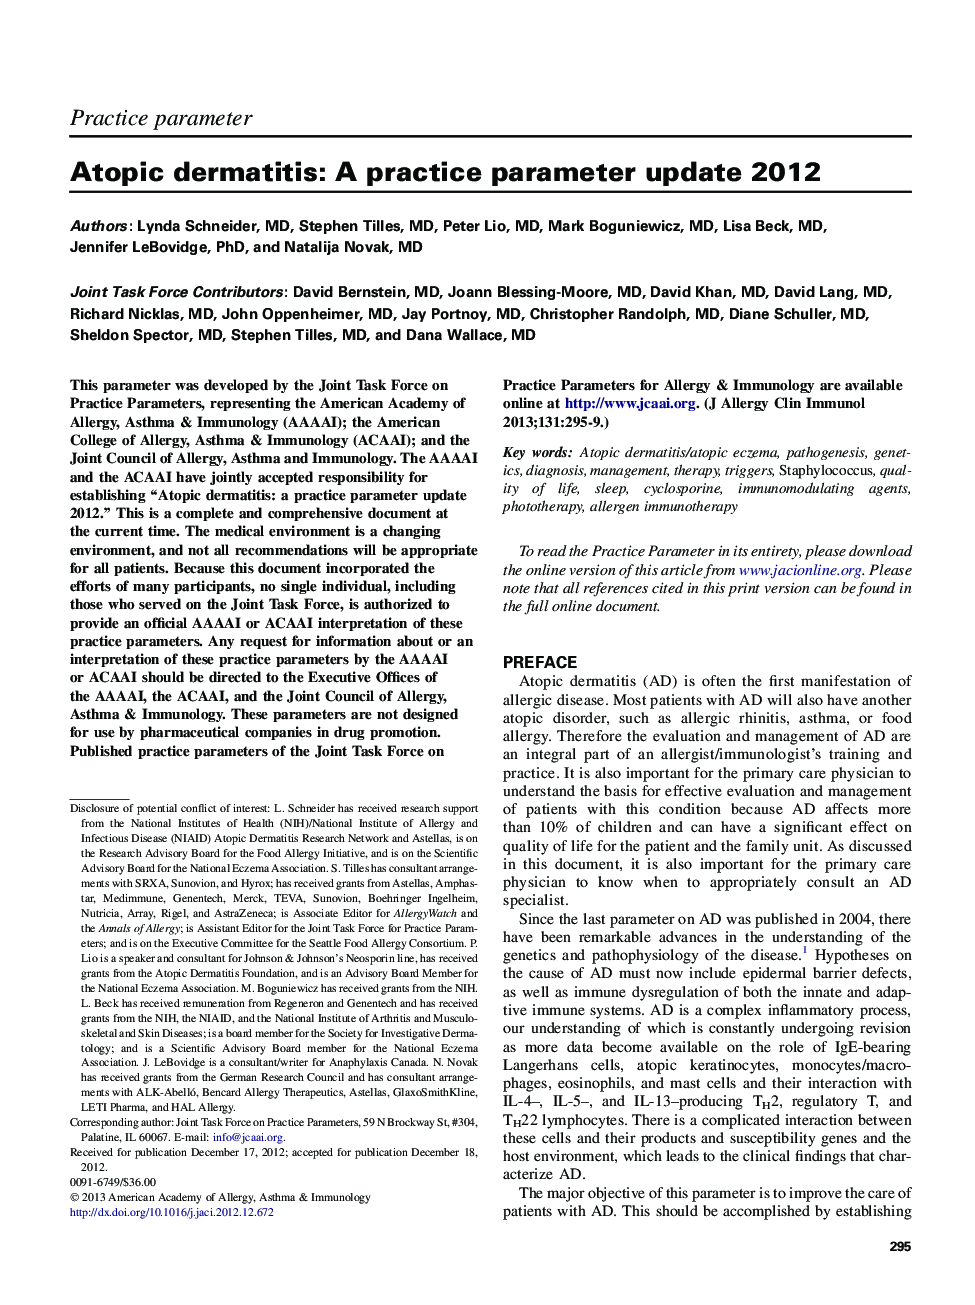 Atopic dermatitis: AÂ practice parameter update 2012